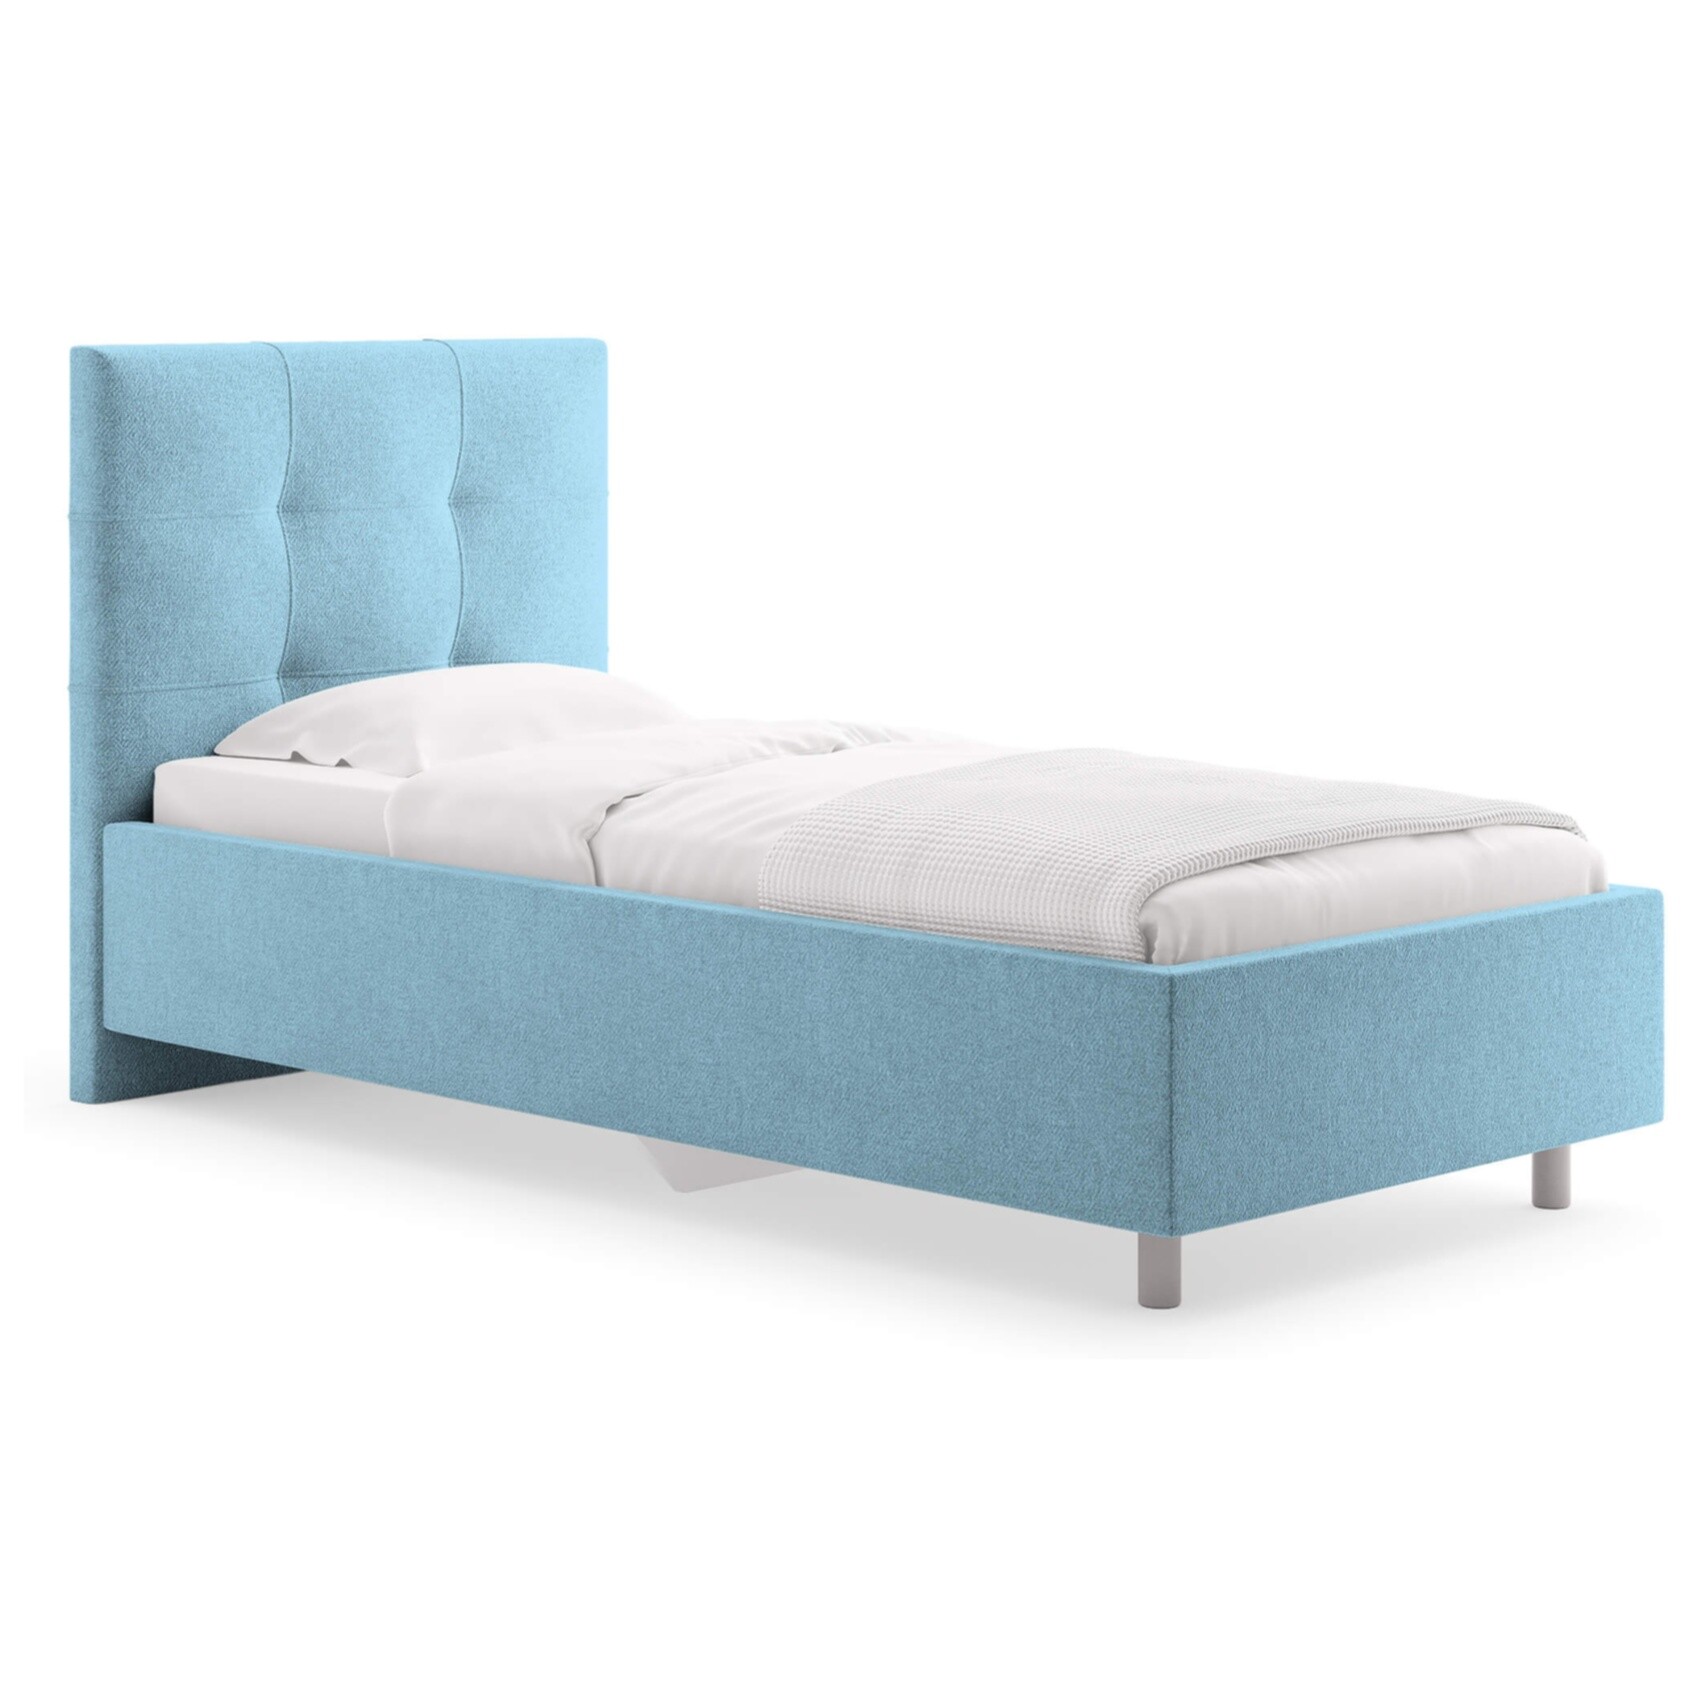 Кровать с мягким изголовьем односпальная 90х190 см рогожка голубая Caprice